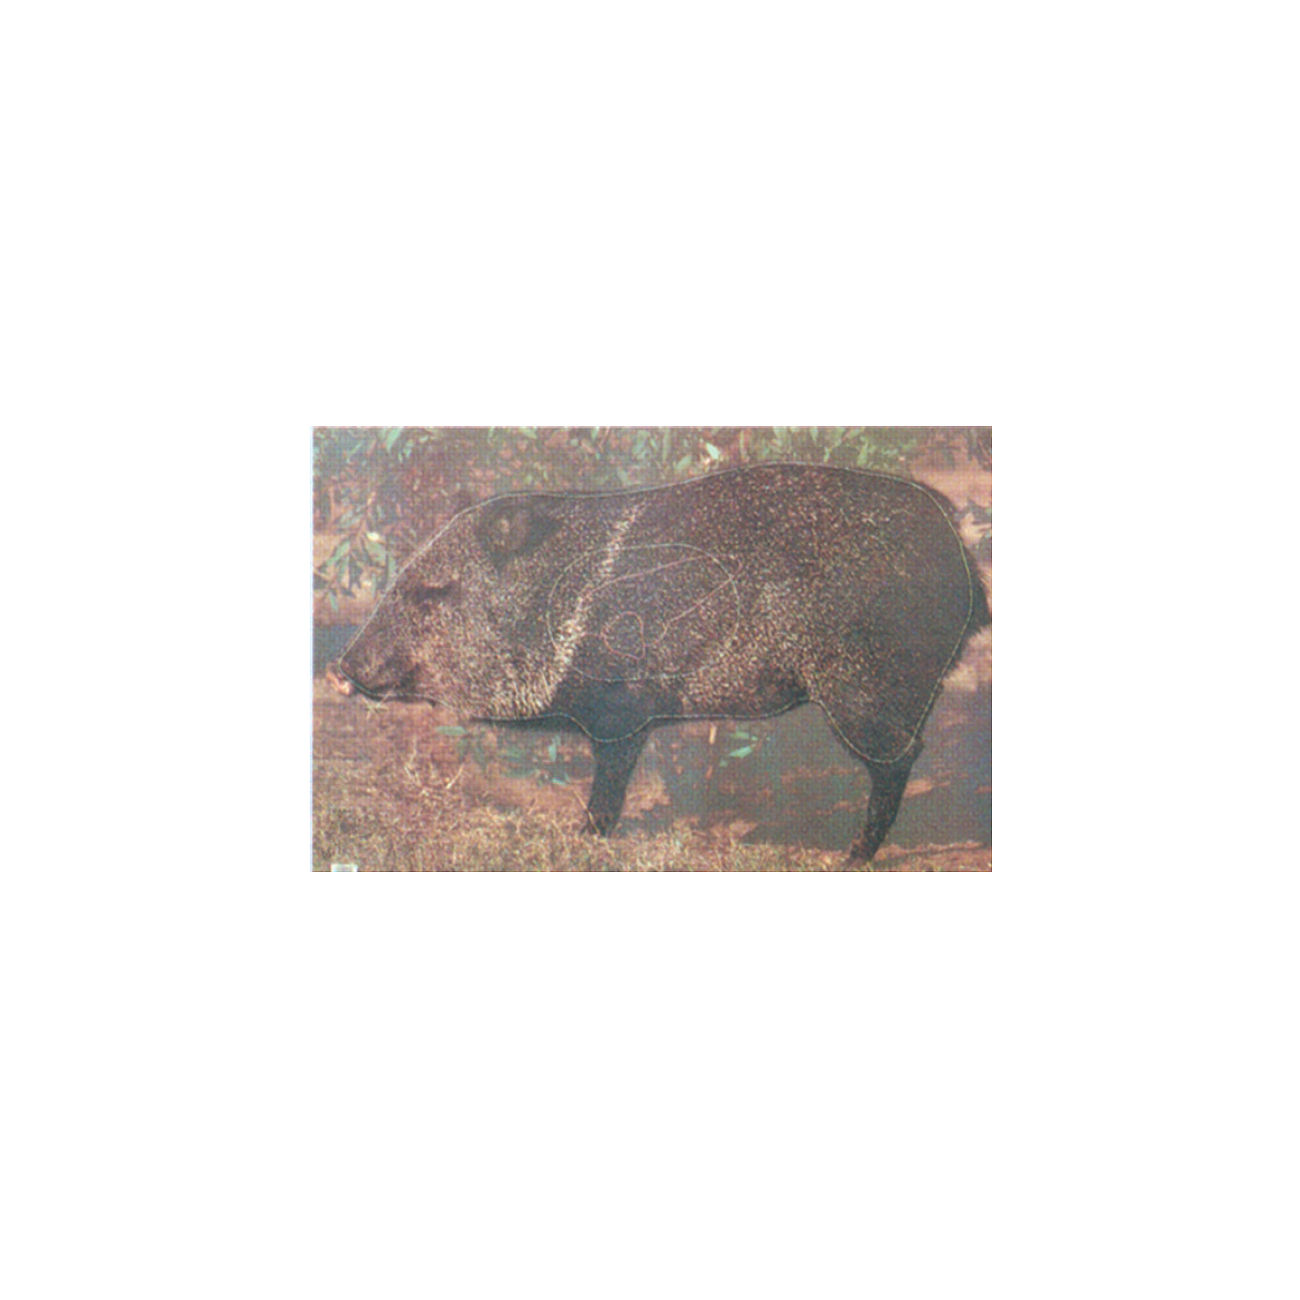 Zielscheibe Wildschwein 62 x 95 cm